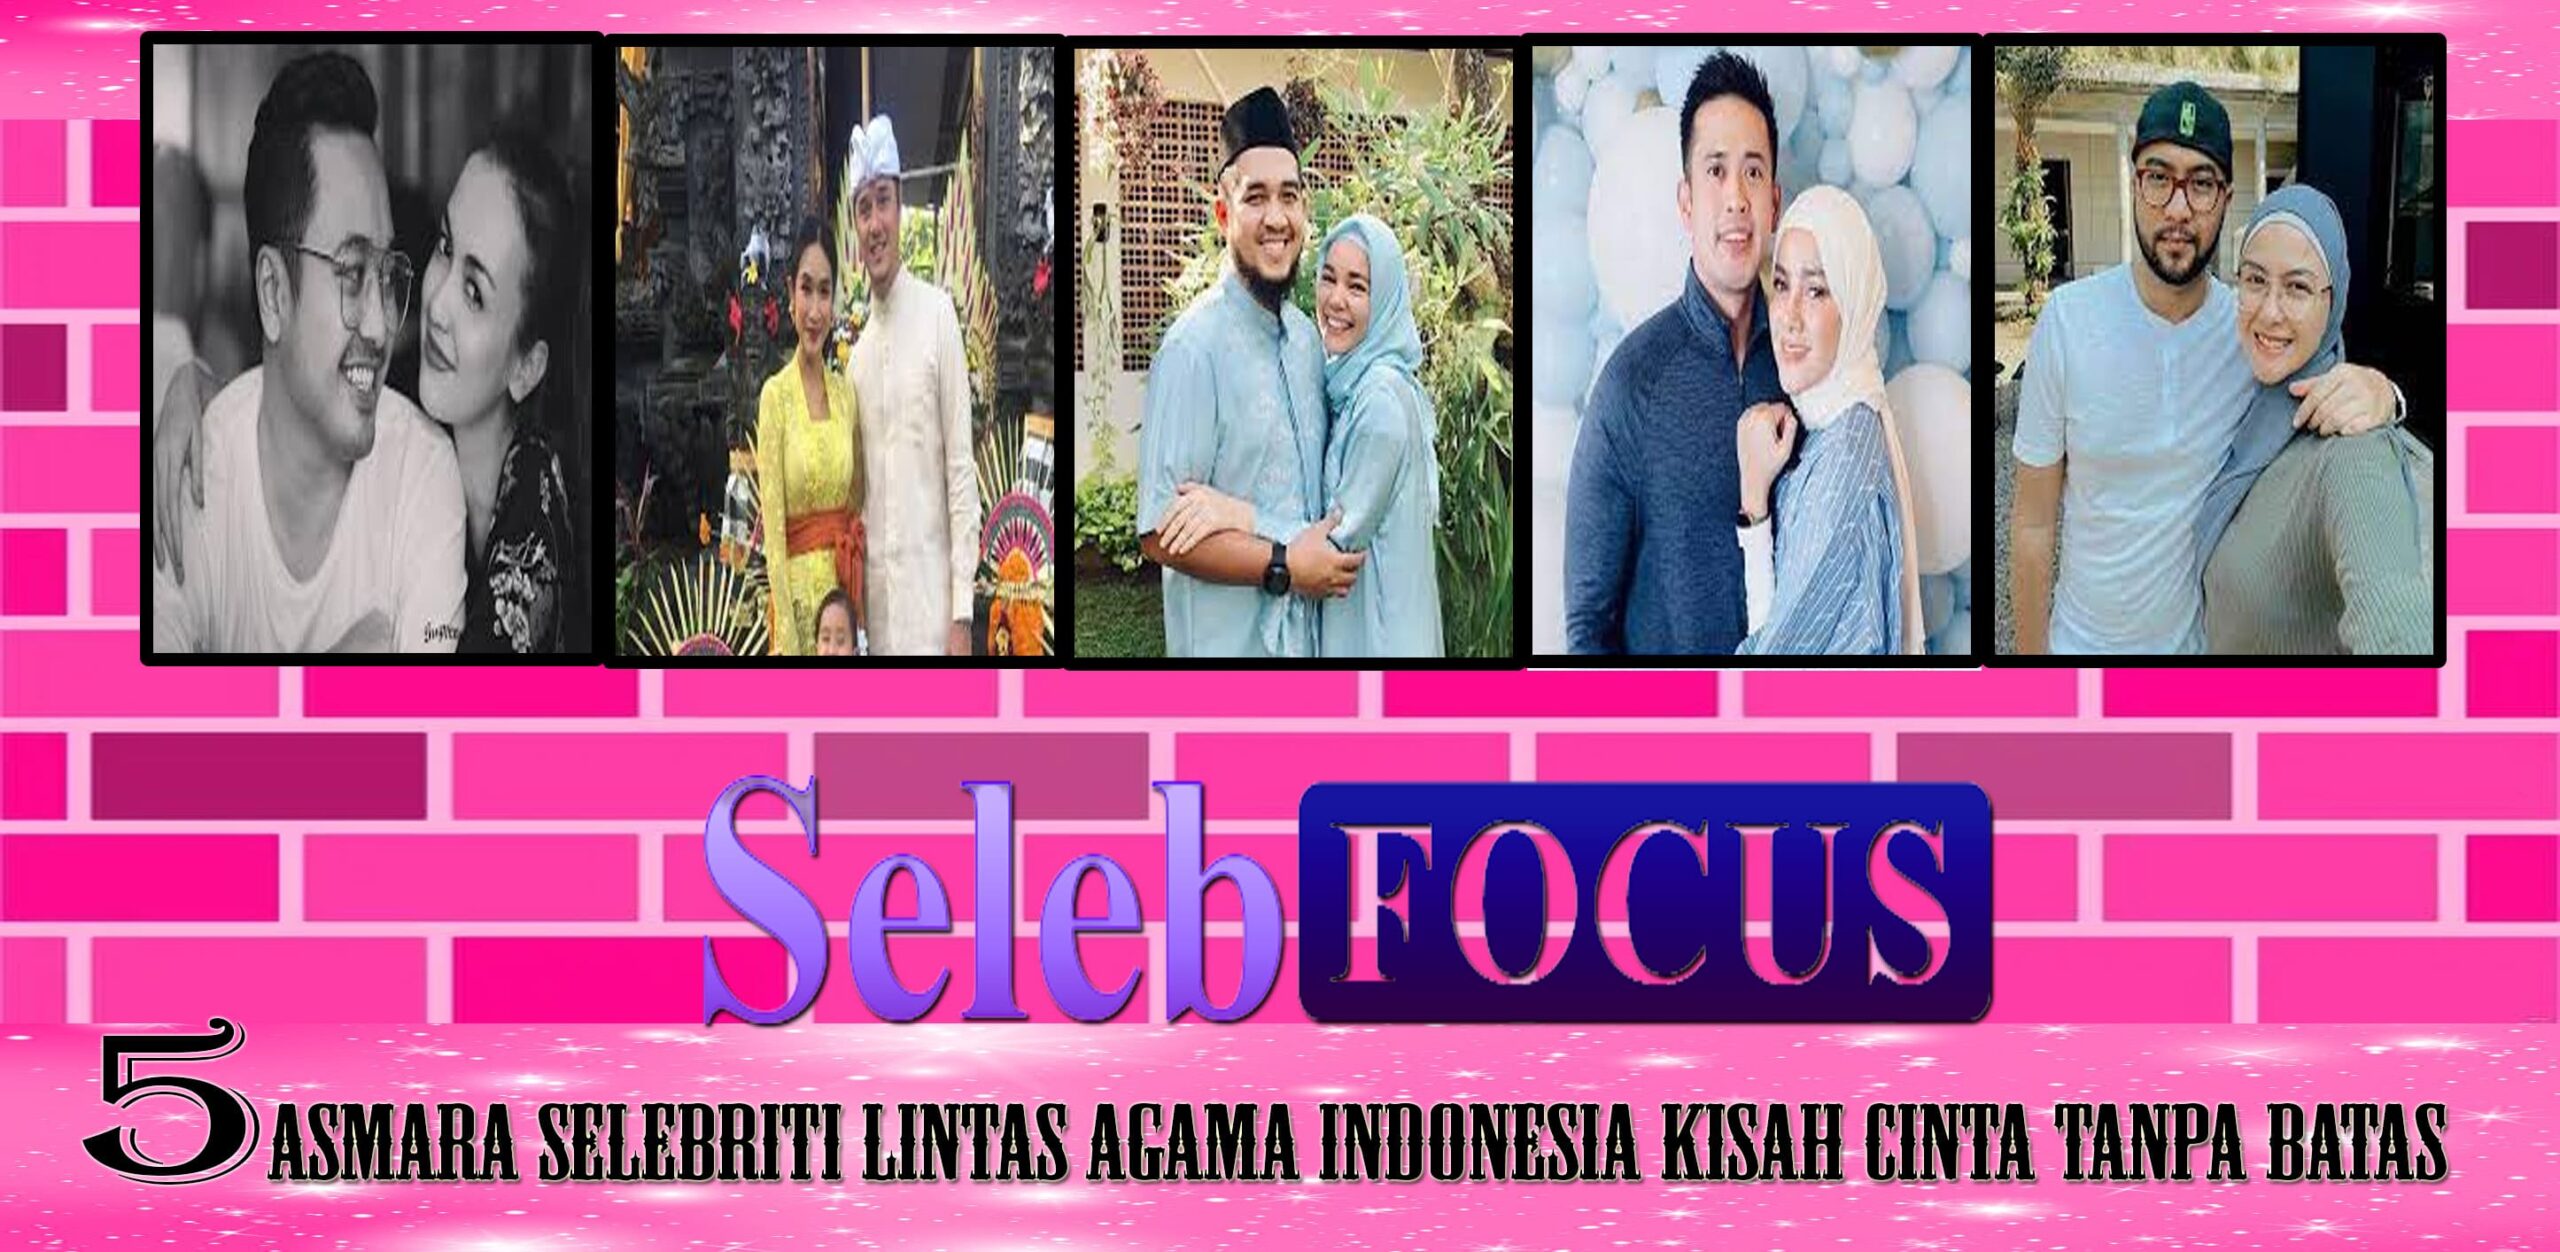 Asmara Selebriti Lintas Agama Indonesia Kisah Cinta Tanpa Batas